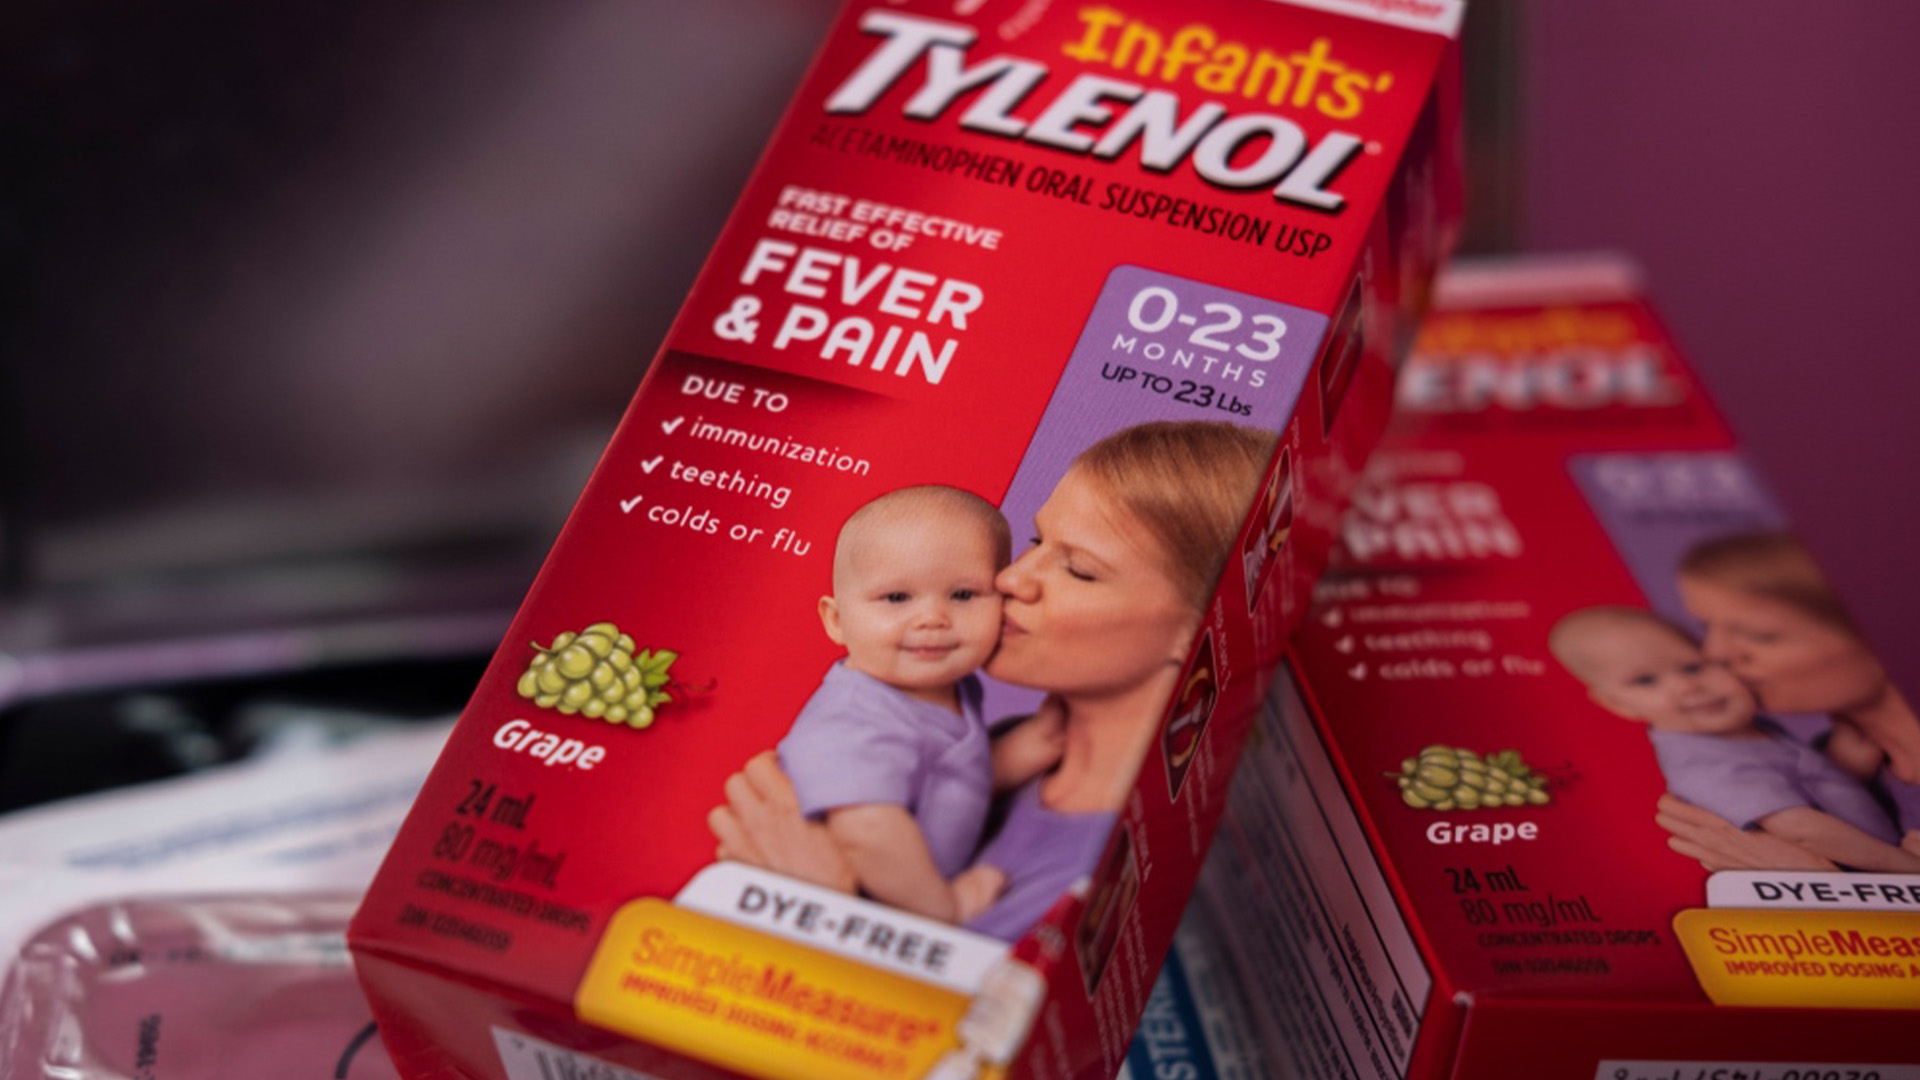 La pénurie de Tylenol pour enfants est en train d’empirer la situation dans les hôpitaux, selon une experte.